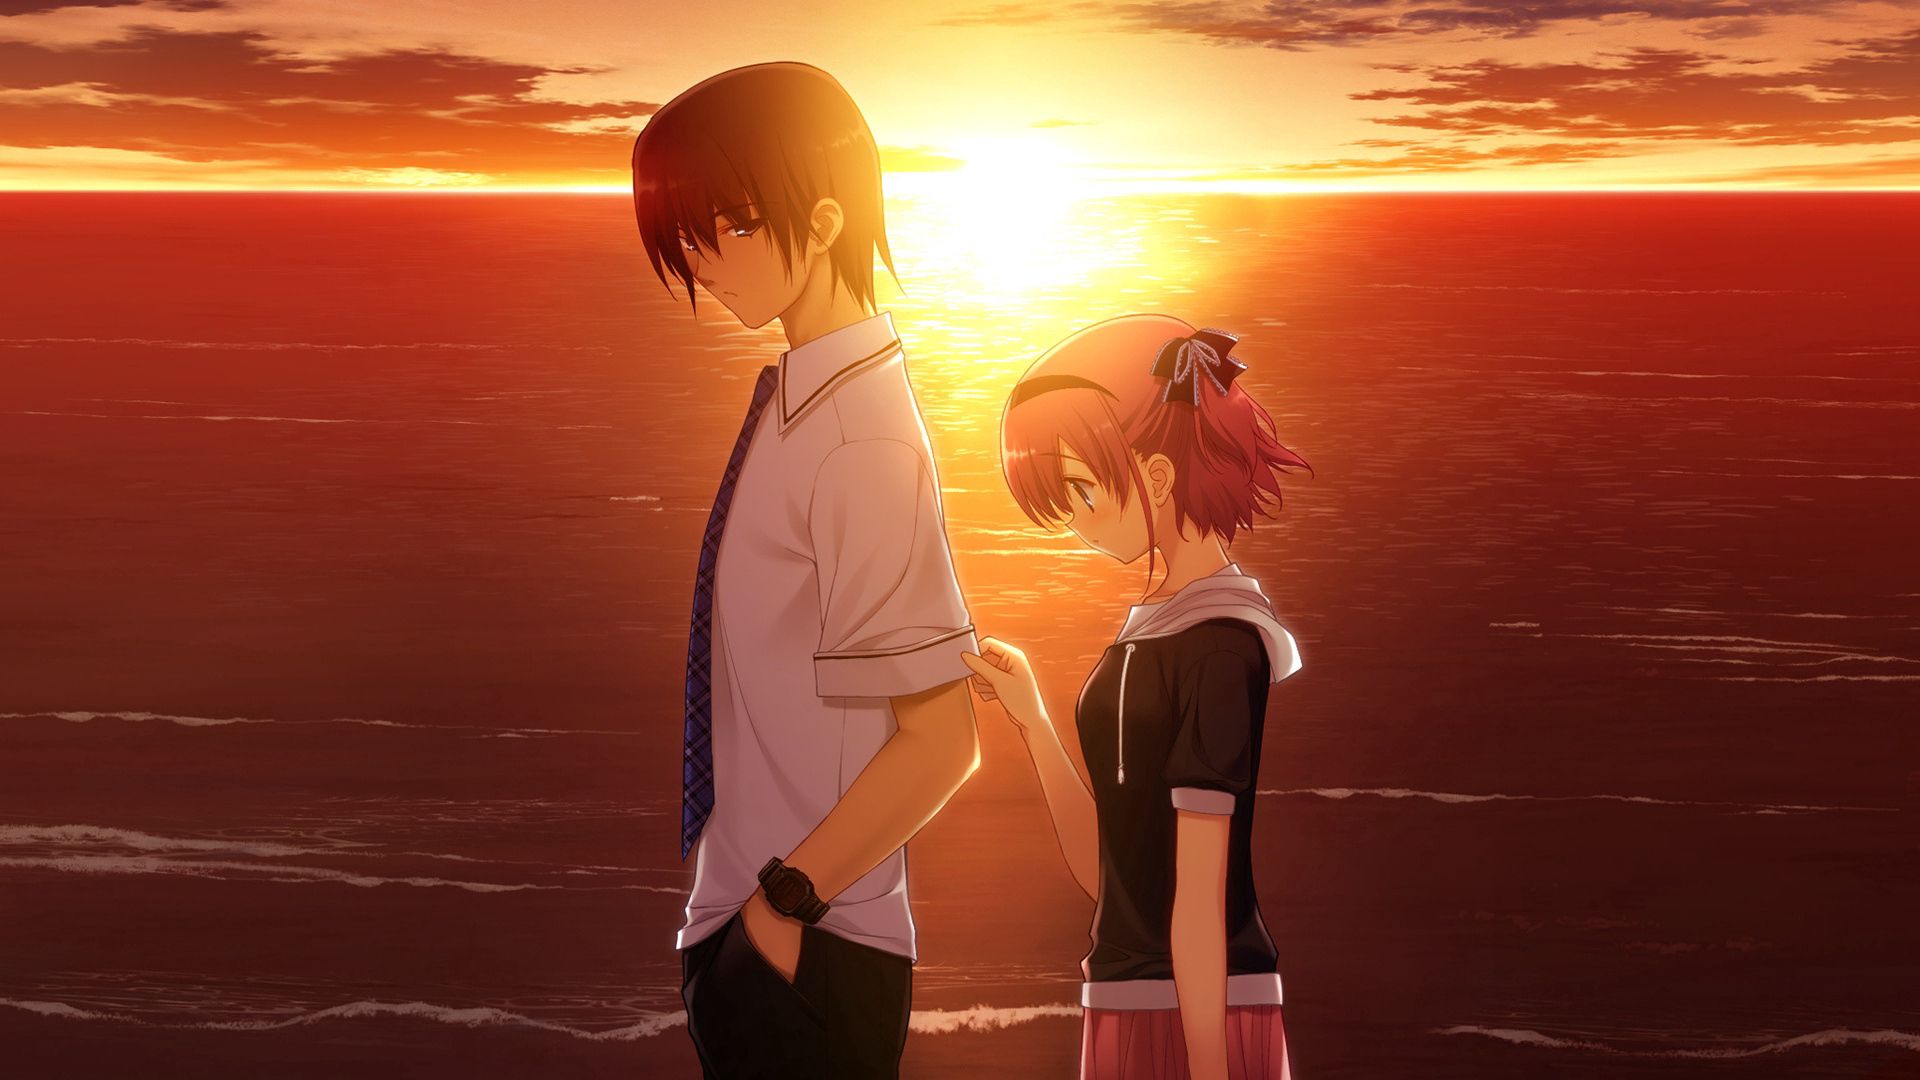 Cool Wallpapers anime, girl, sunset, sadness, guy, sorrow